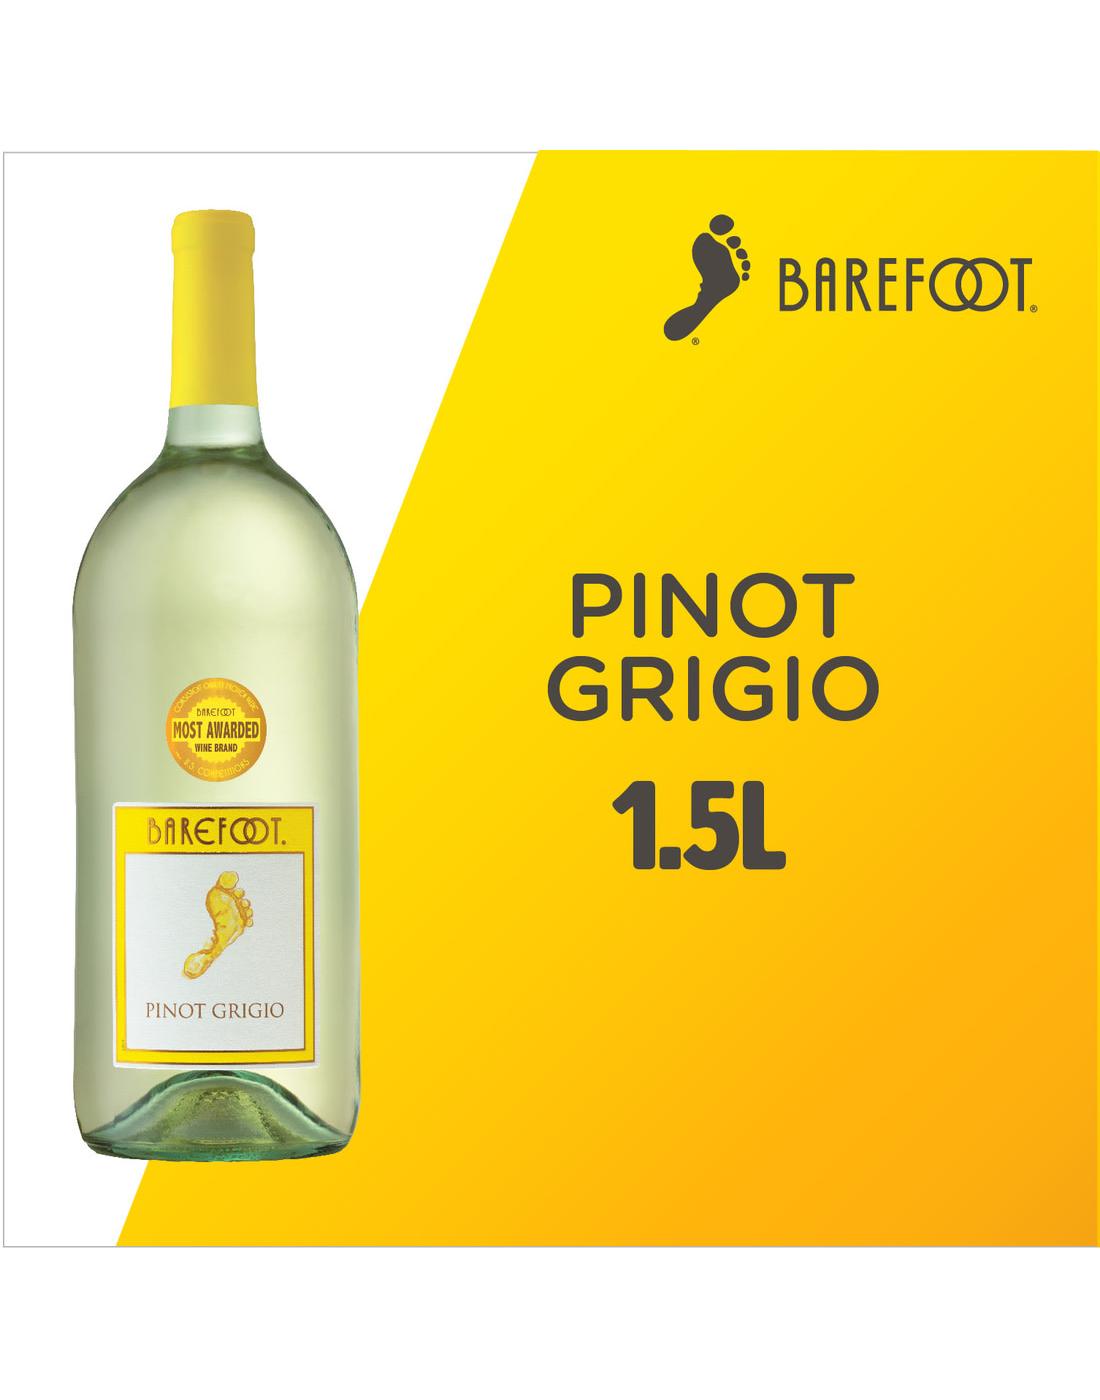 Barefoot Pinot Grigio White Wine; image 5 of 5